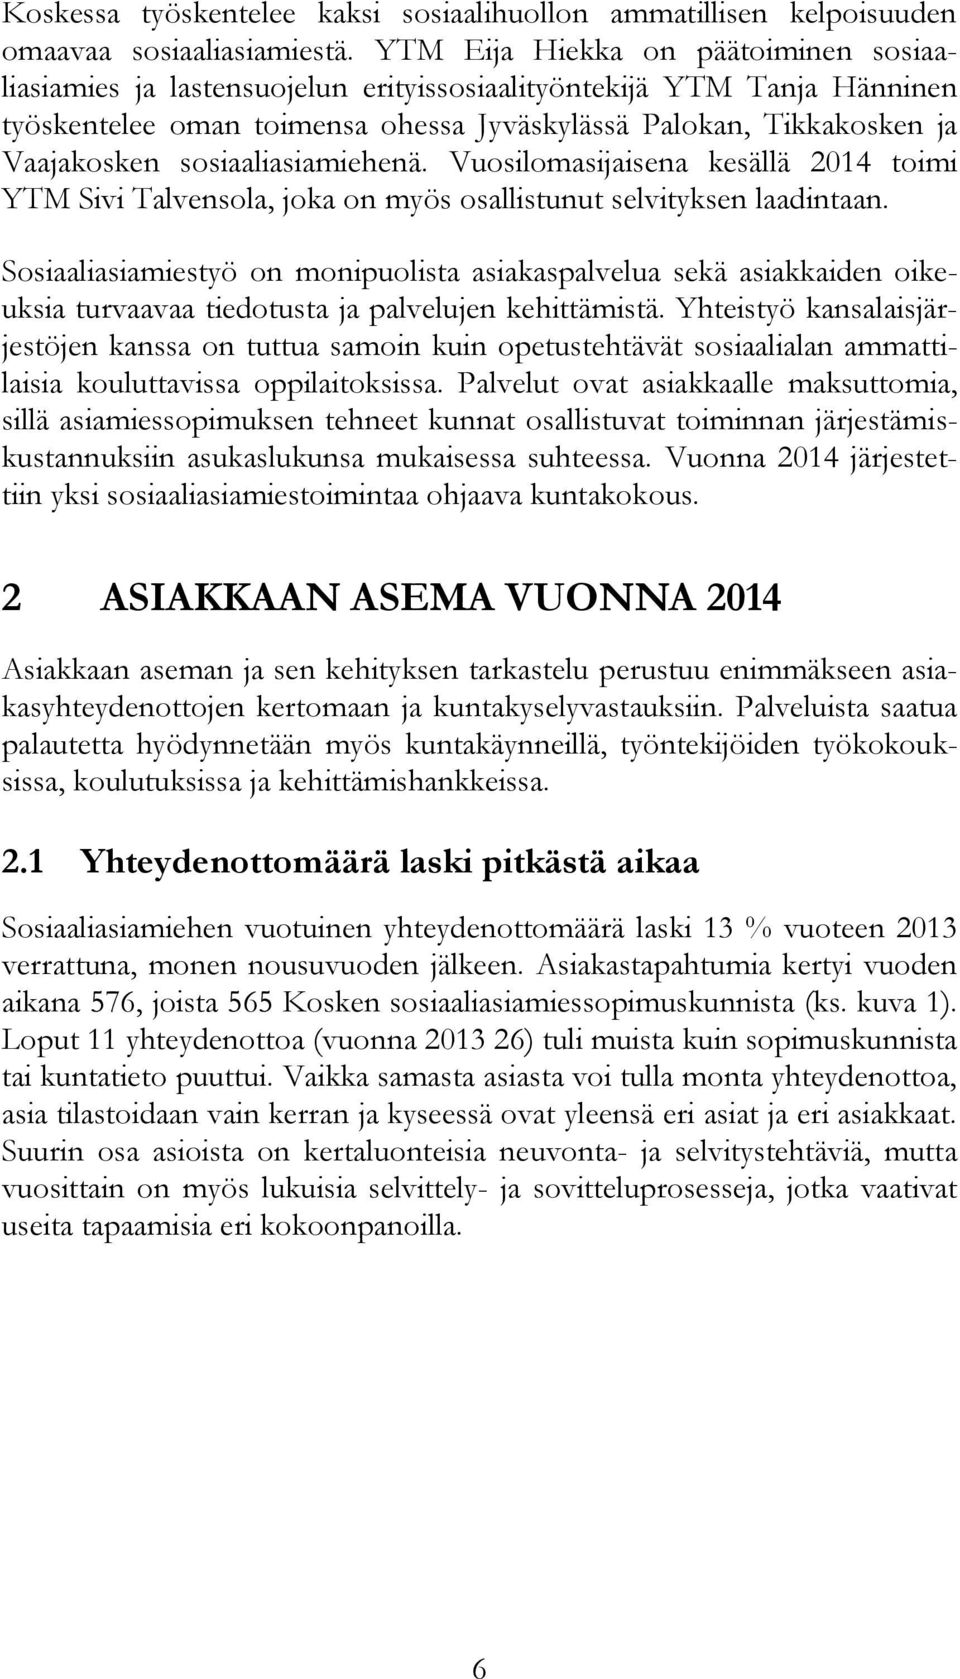 sosiaaliasiamiehenä. Vuosilomasijaisena kesällä 2014 toimi YTM Sivi Talvensola, joka on myös osallistunut selvityksen laadintaan.